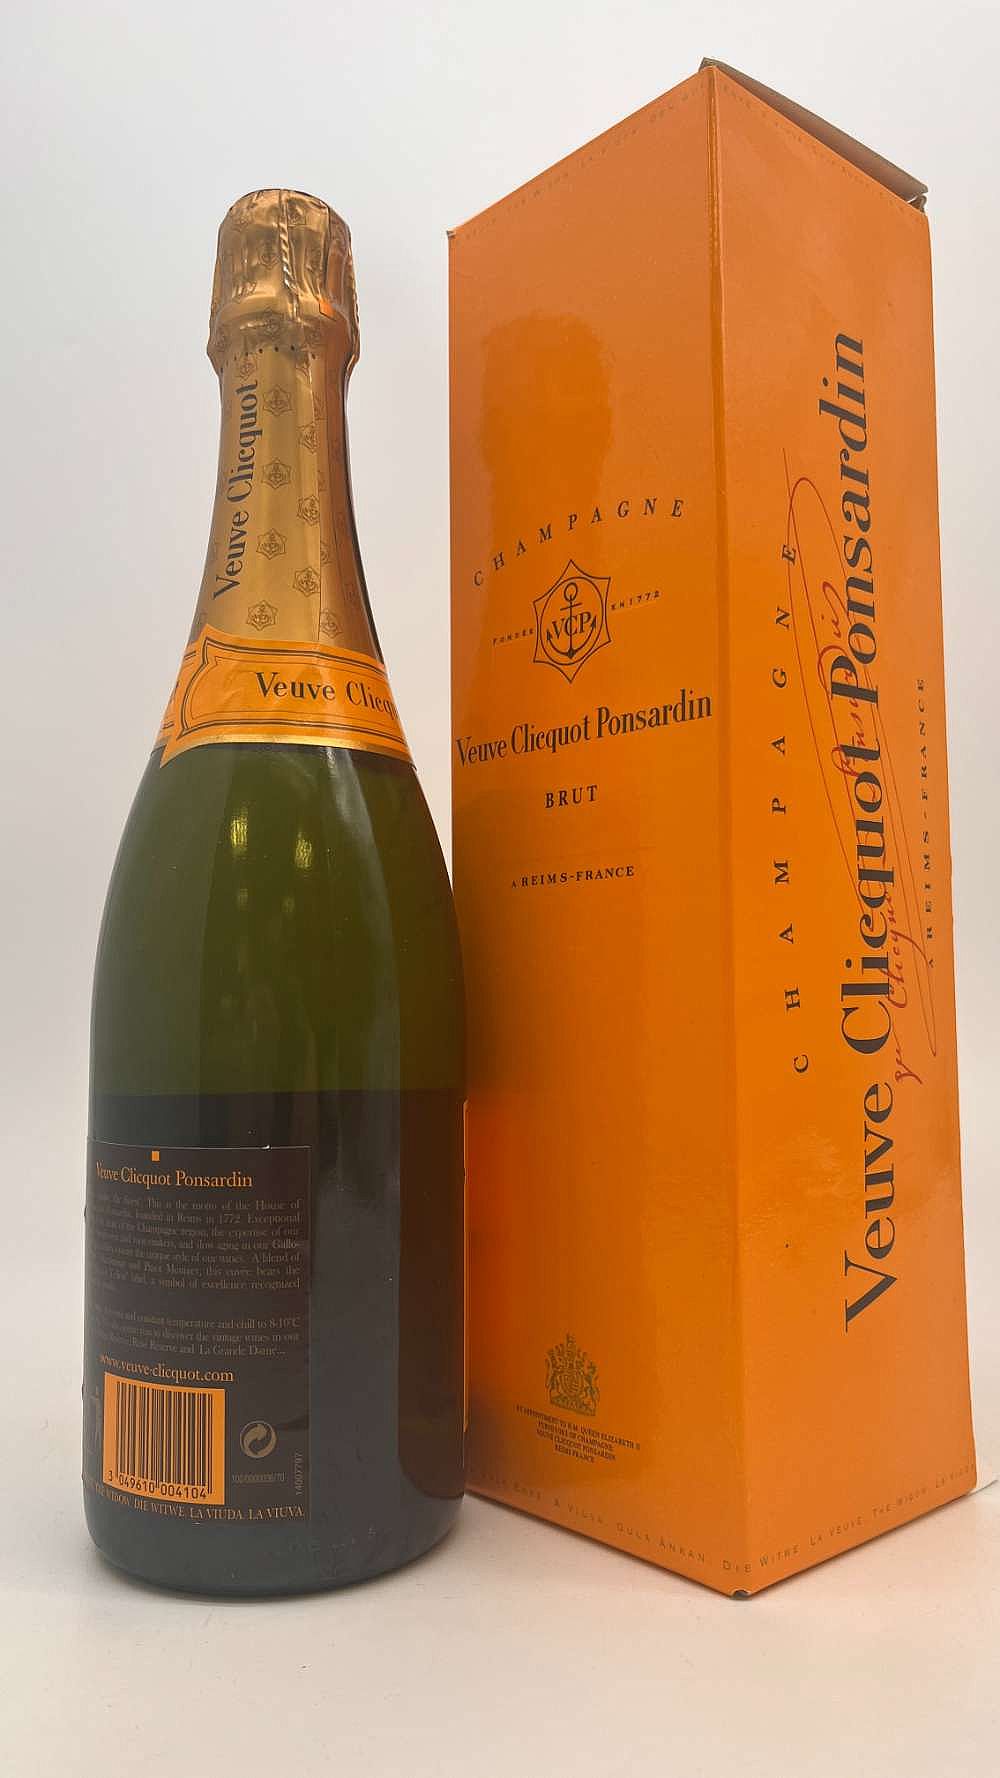 Veuve Clicquot Ponsardin Brut Rose Champagne, France (Vintage Varies) - 1.5 L bottle